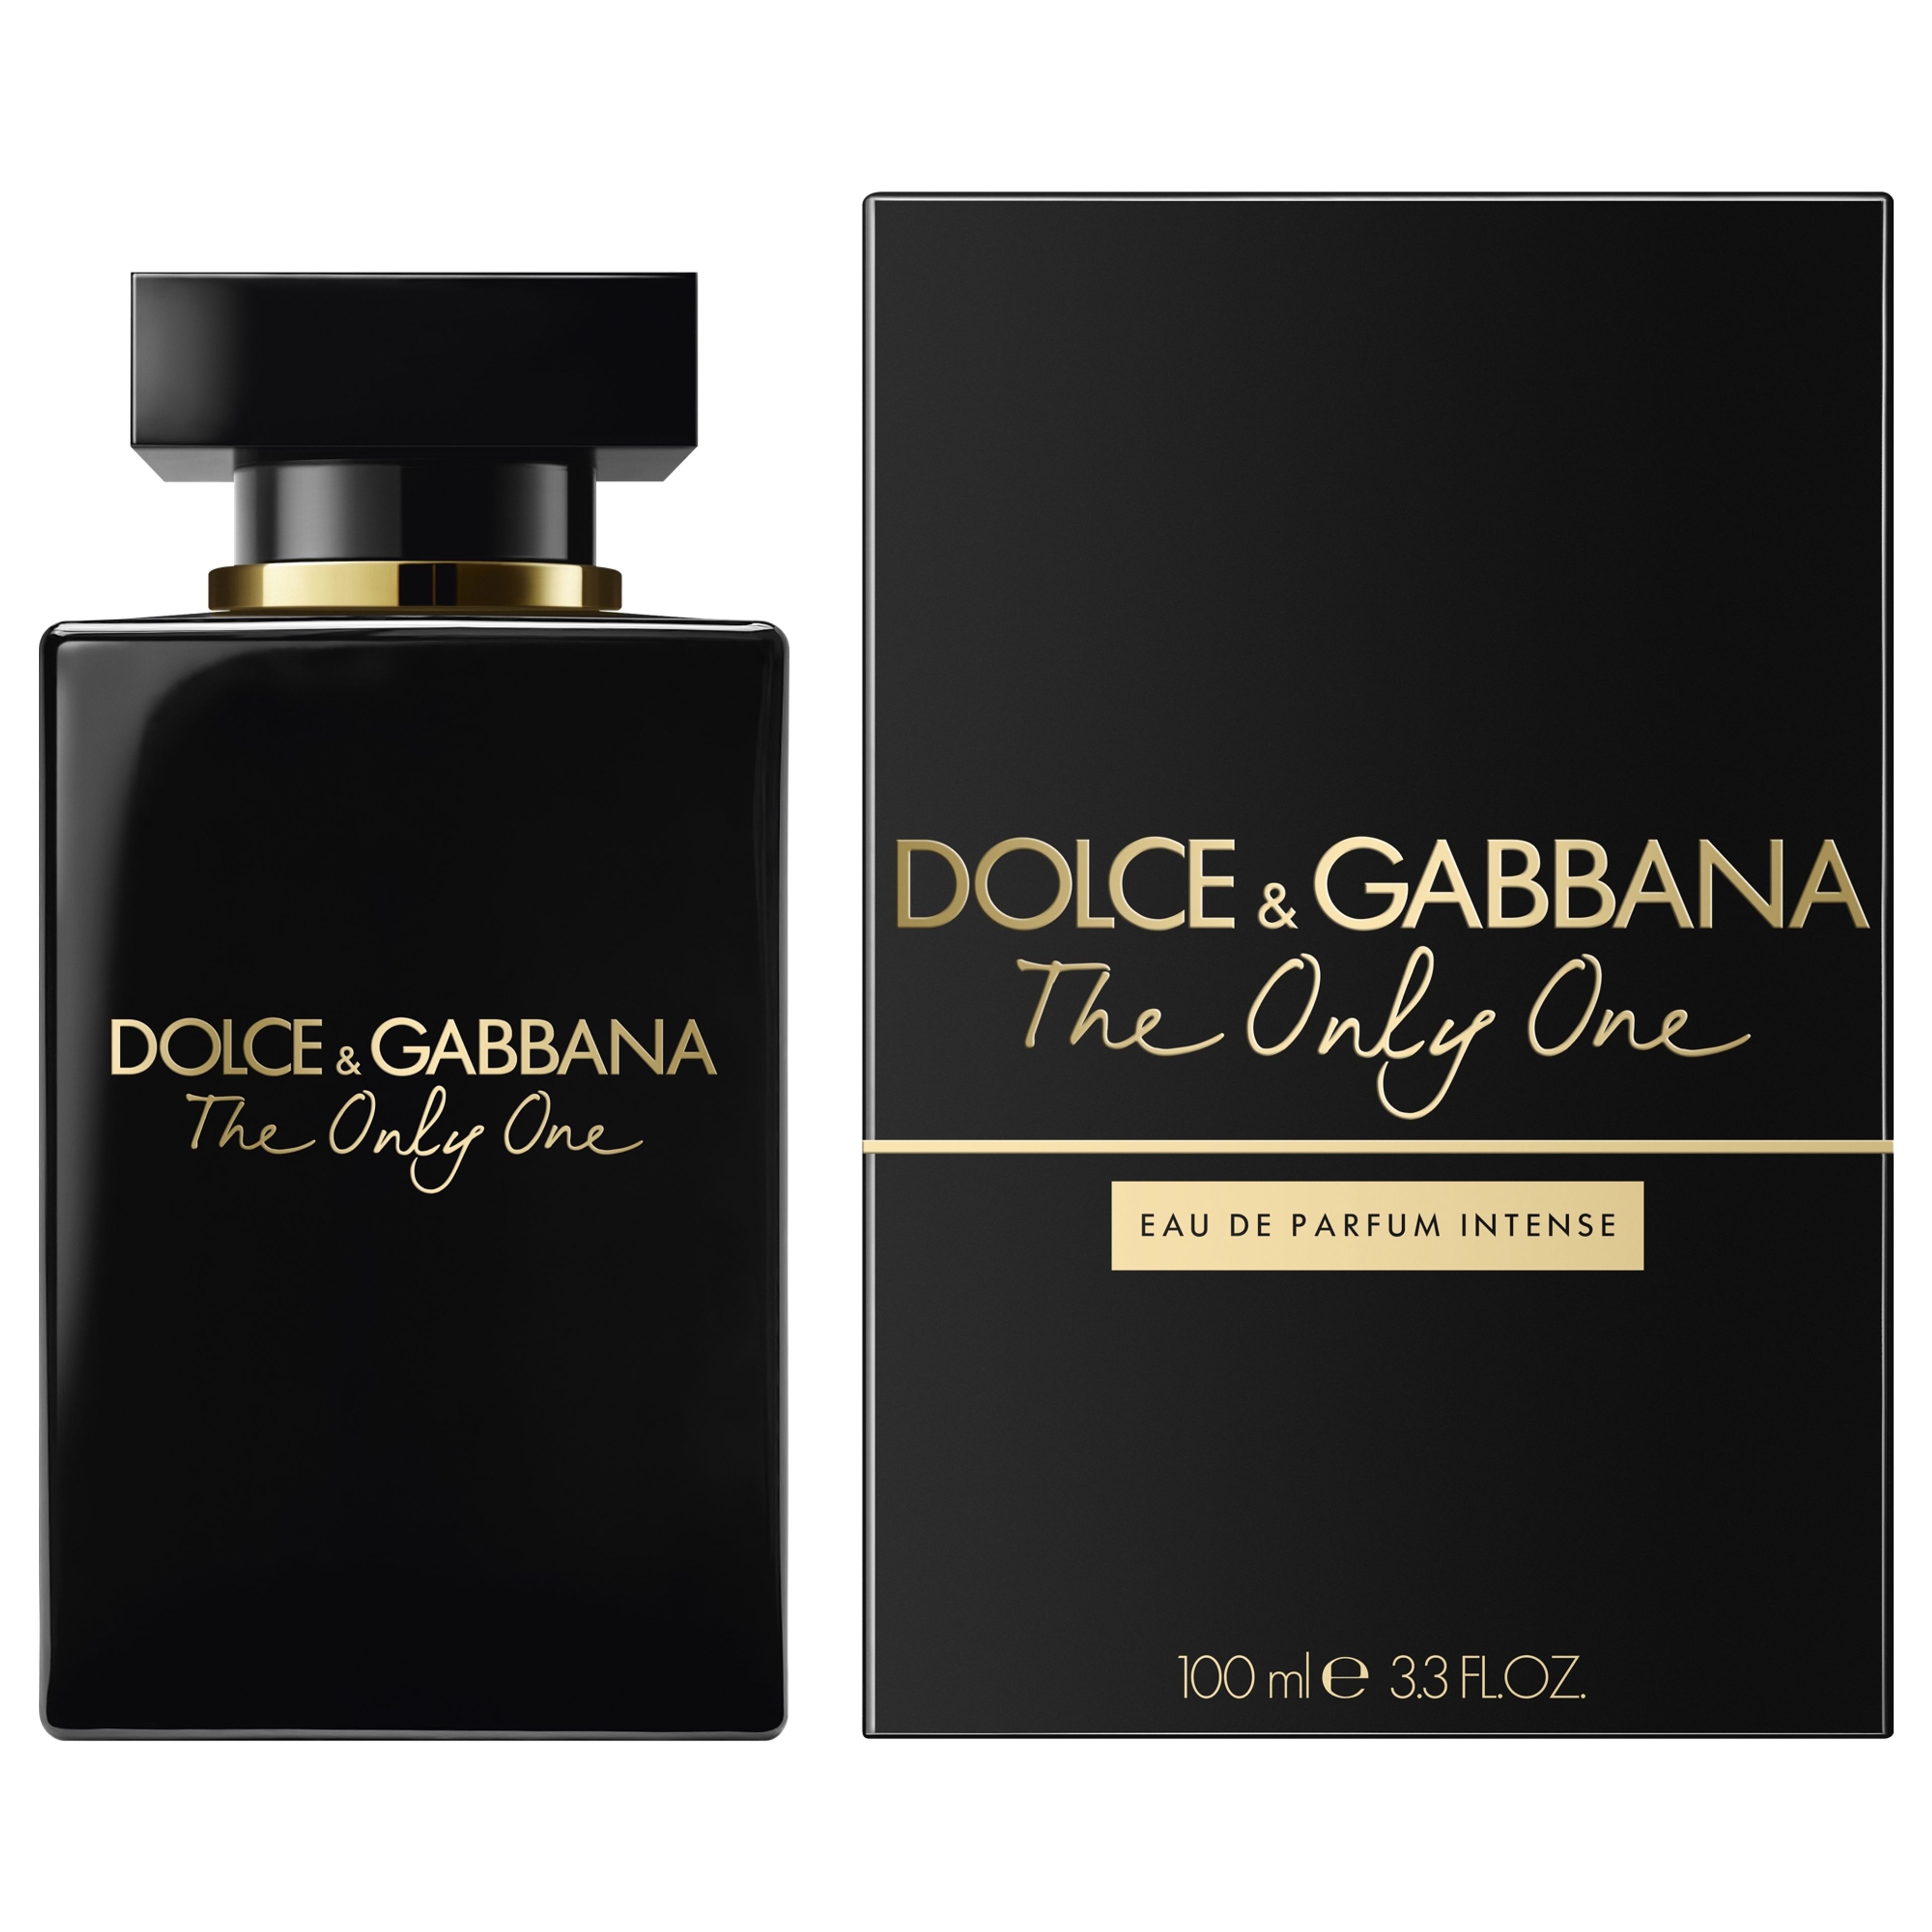 Dolce & Gabbana The Only One Eau De Parfum Intense Pour Femme 2